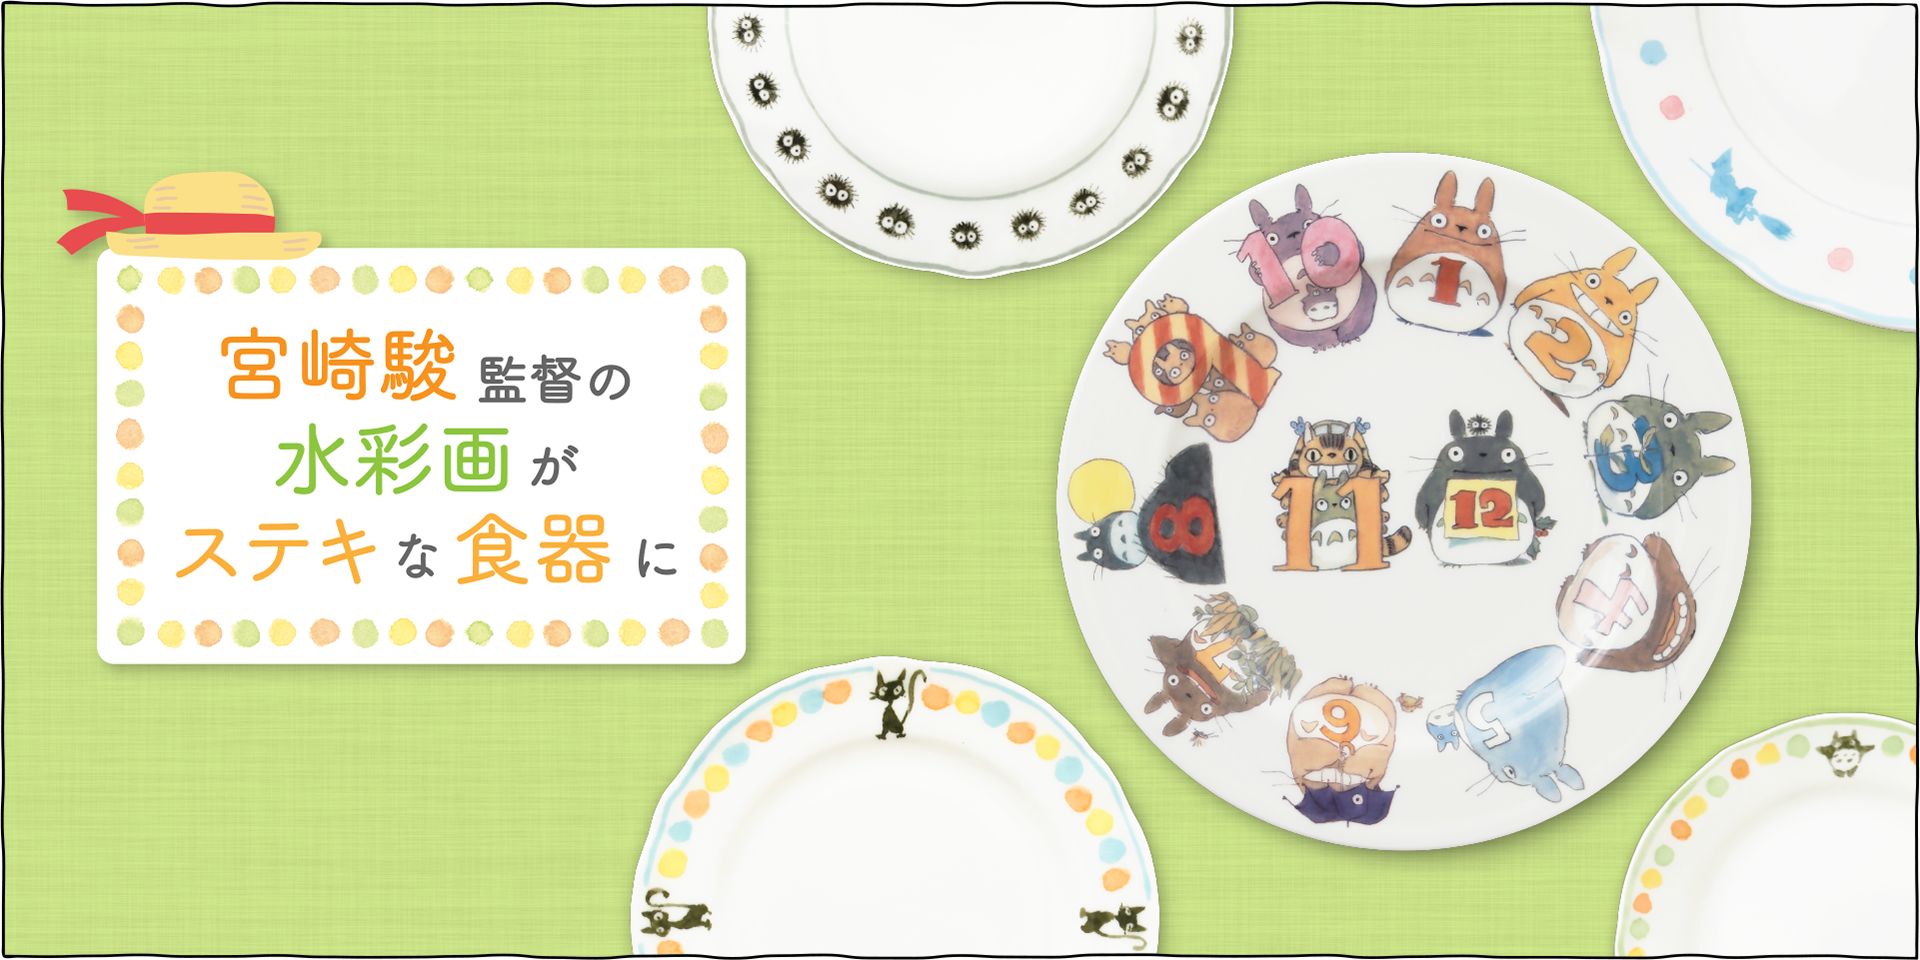 ジブリ美術館のカフェ「麦わらぼうし」のために宮崎駿監督がデザインした食器です。